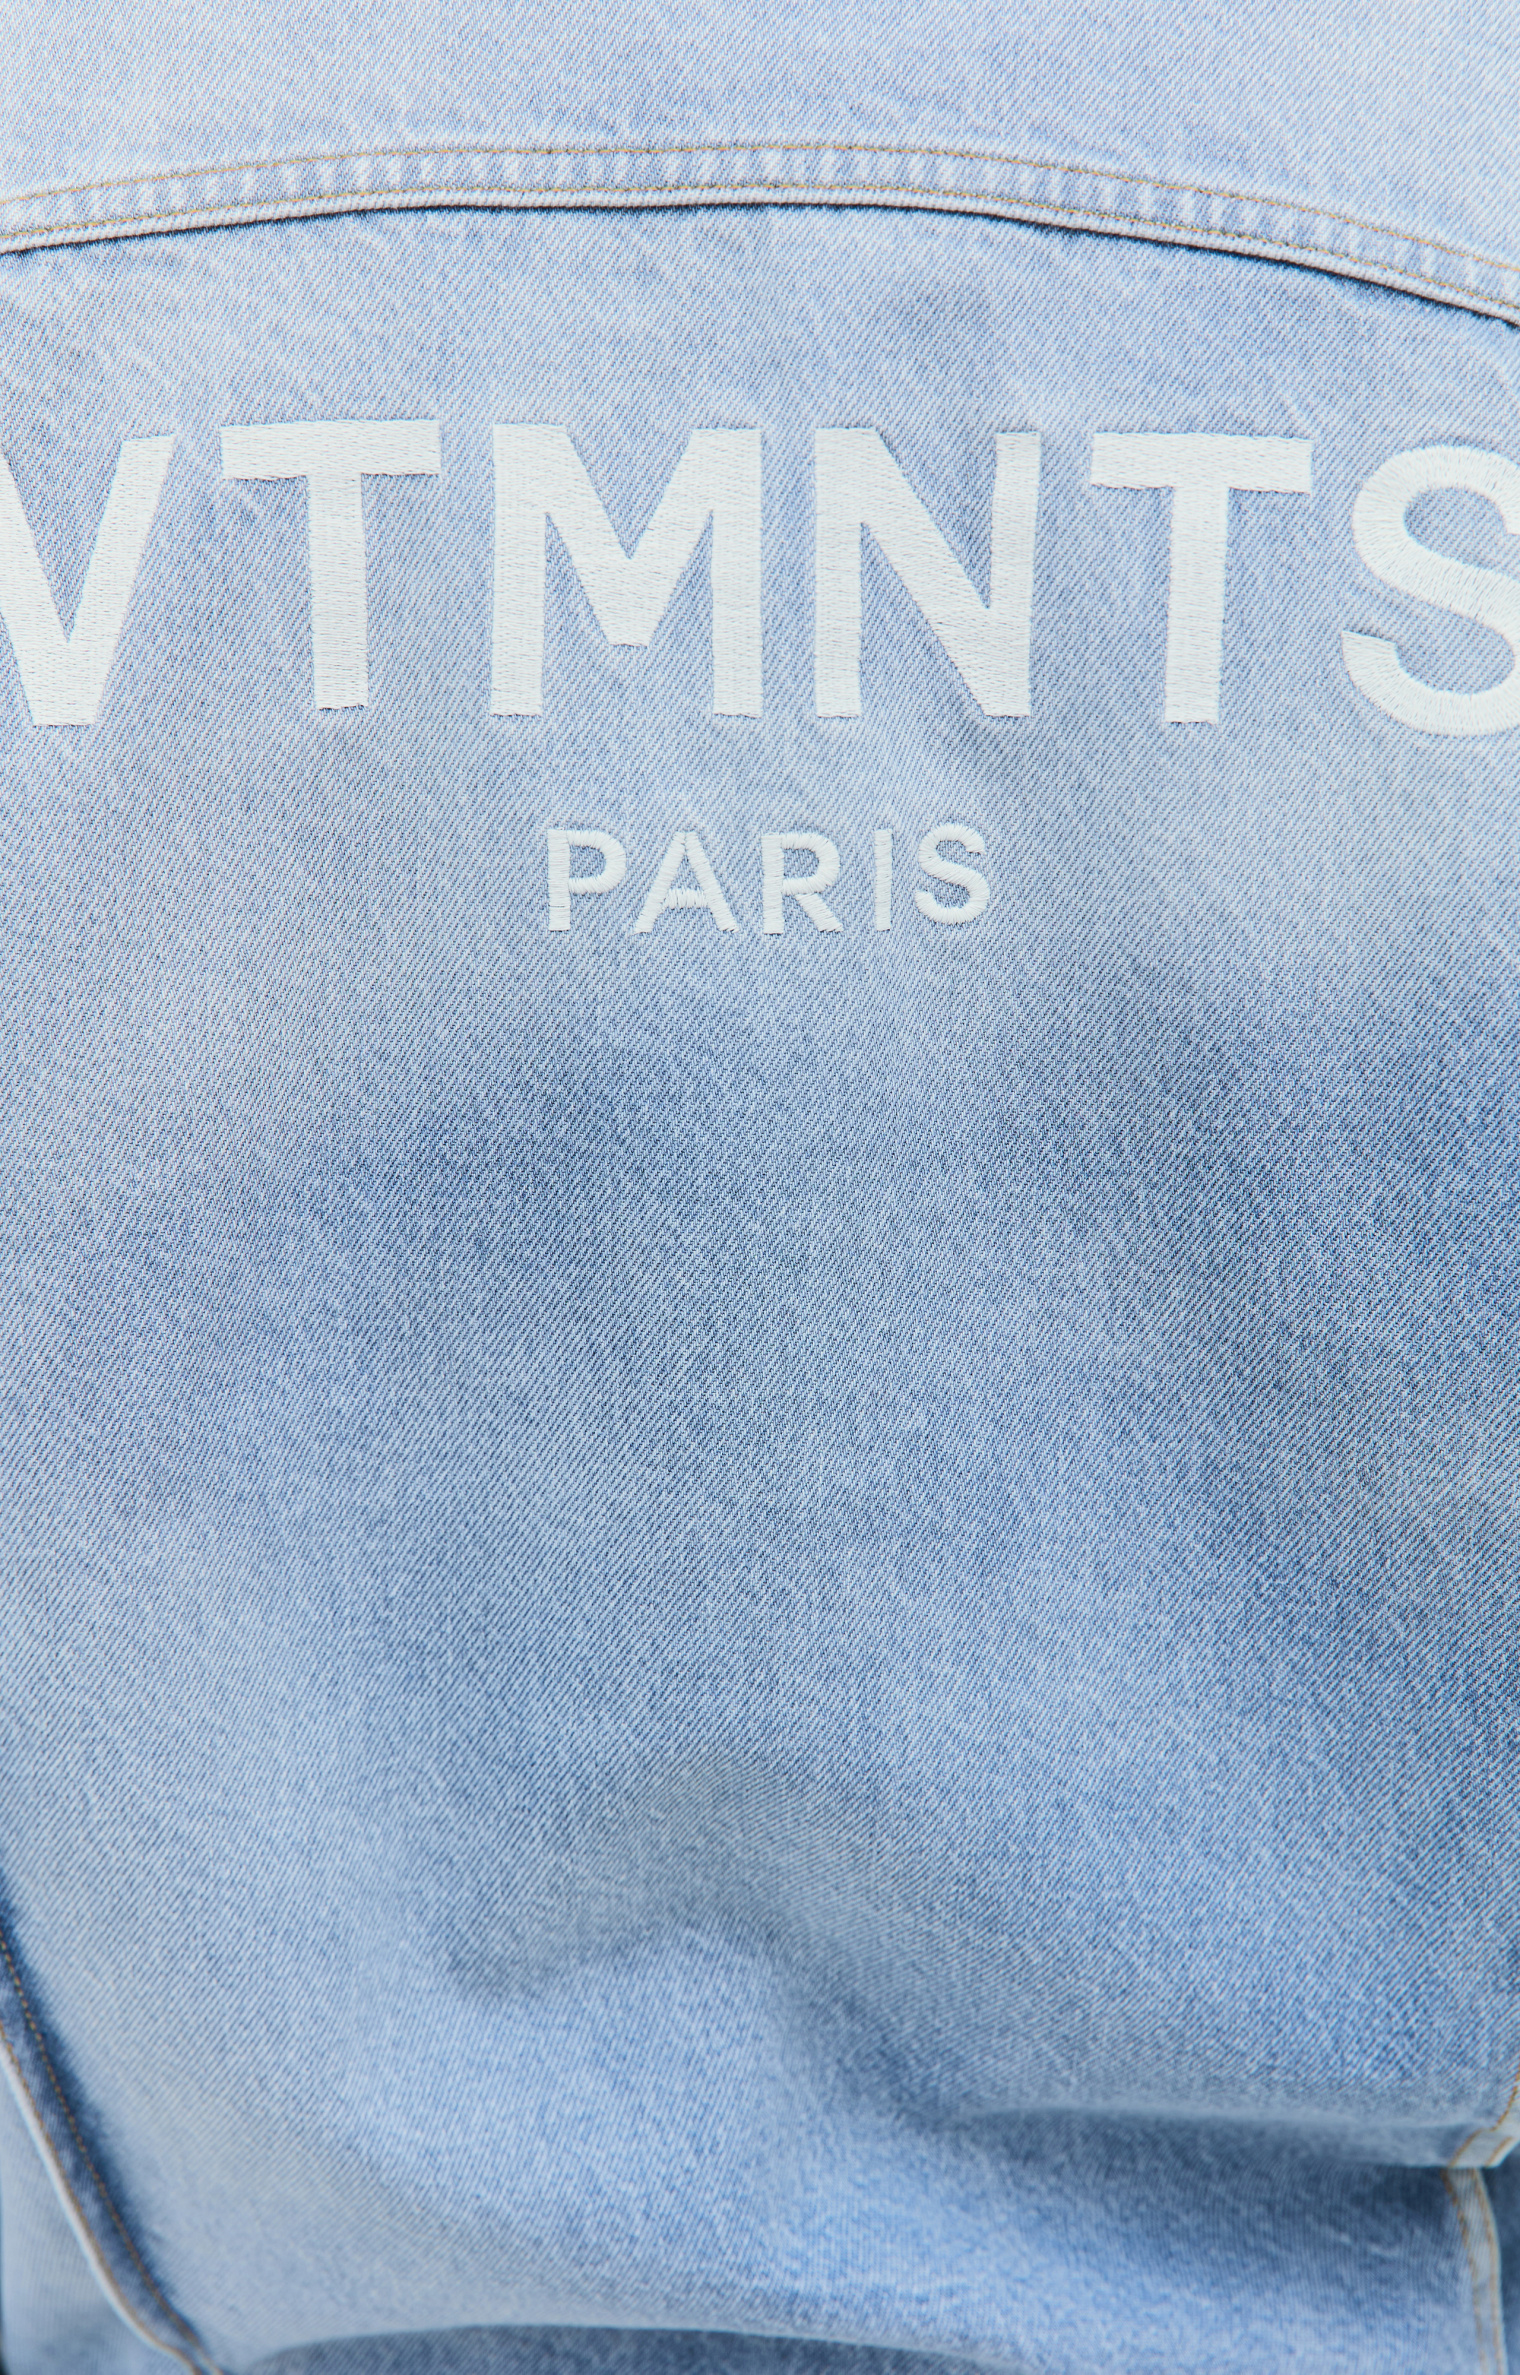 VTMNTS Embroidered logo denim jacket